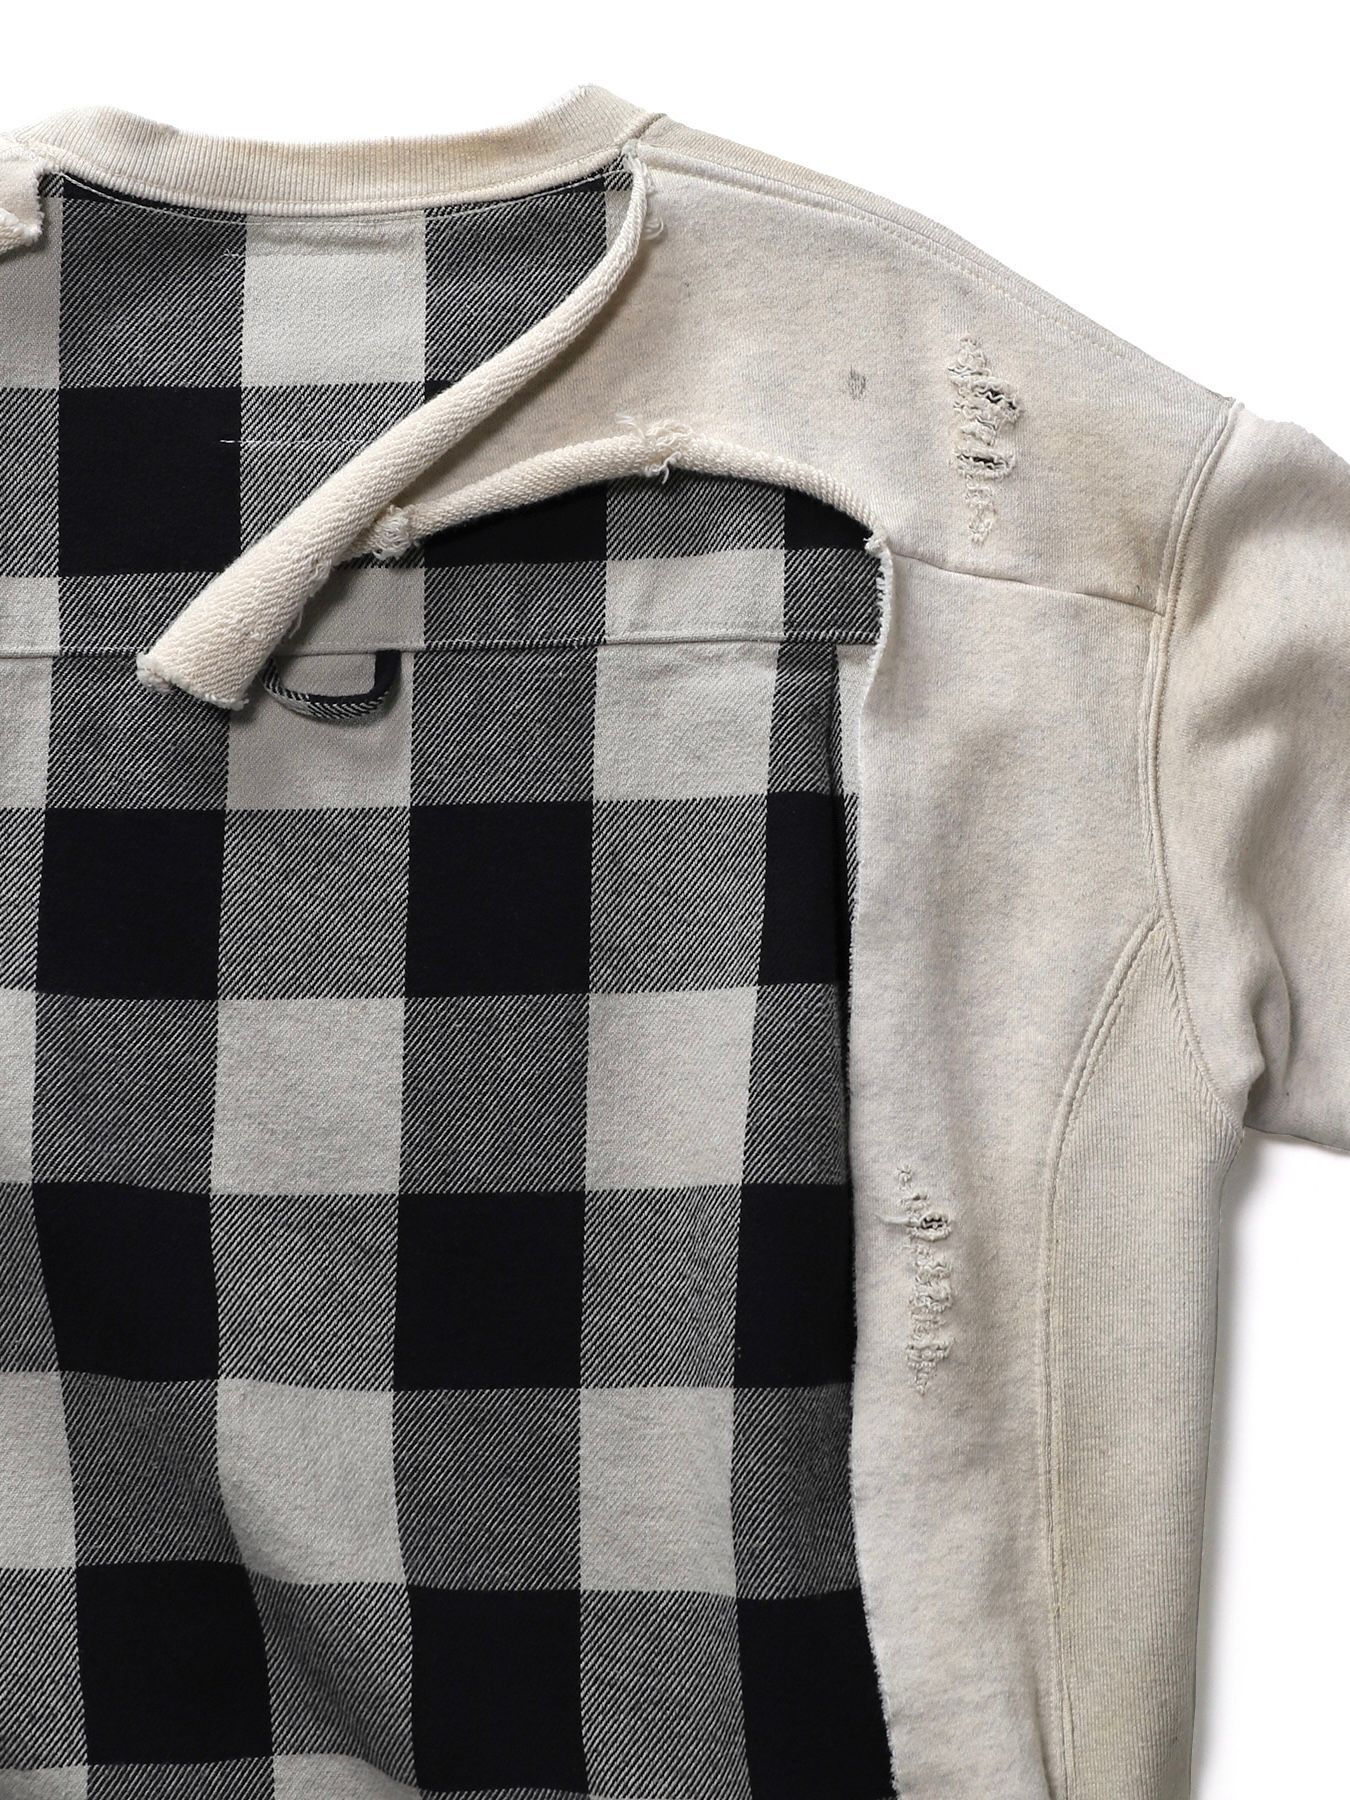 Maison MIHARA YASUHIRO - ドッキング チェックシャツ スウェット / Shirt Combined Pullover /  ブラック | STORY